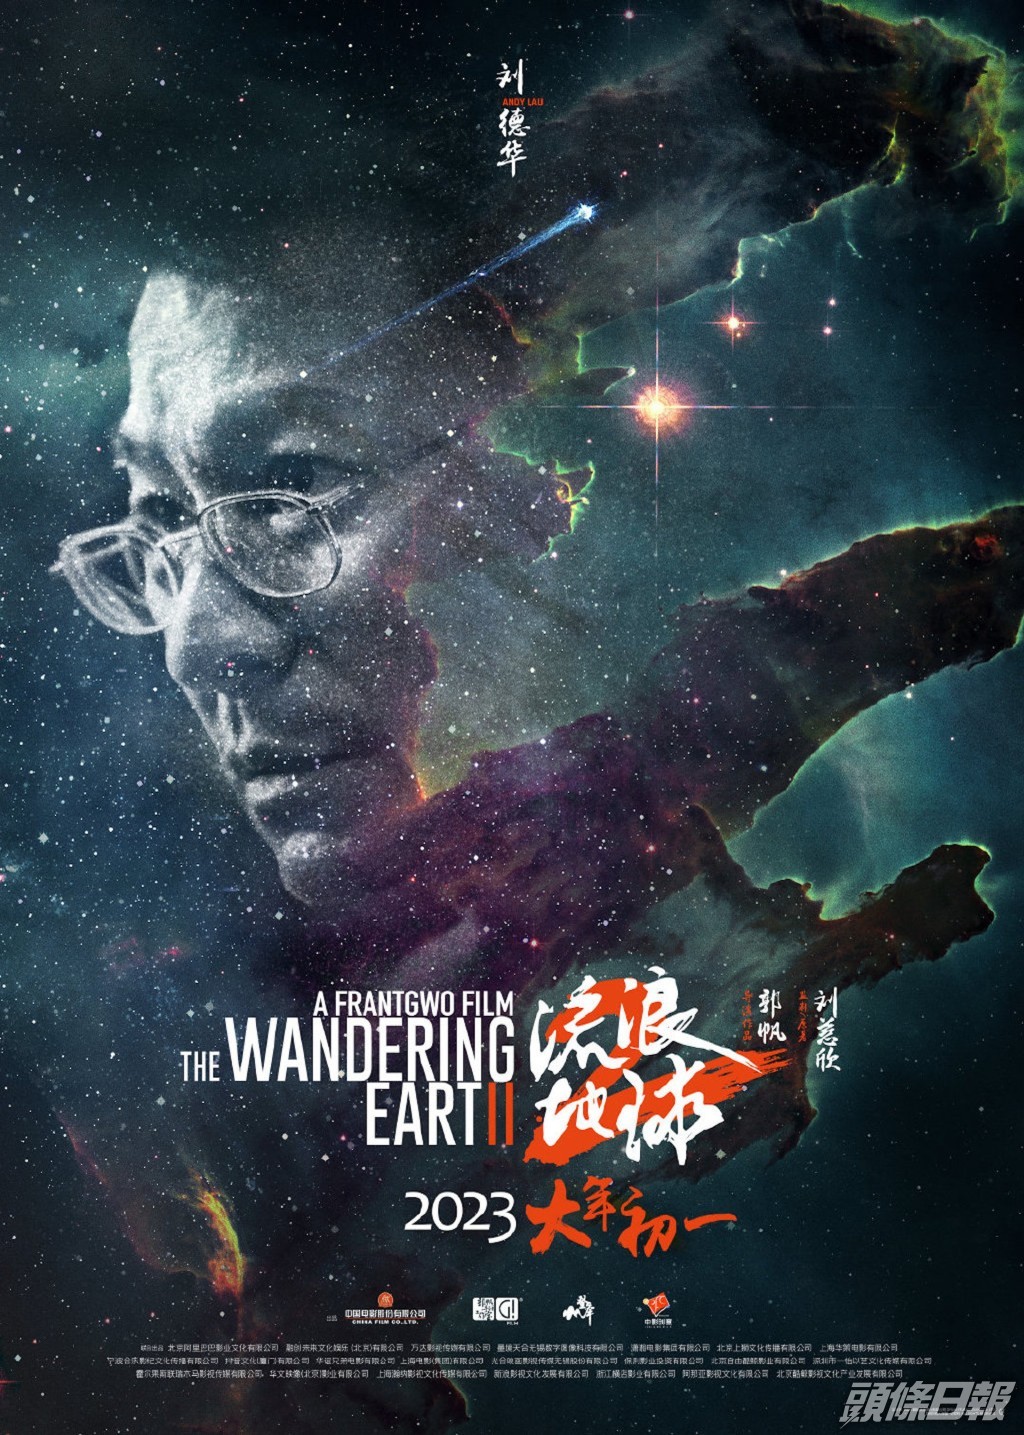 劉德華主演的科幻電影《流浪地球2》於大年初一在內地上映。